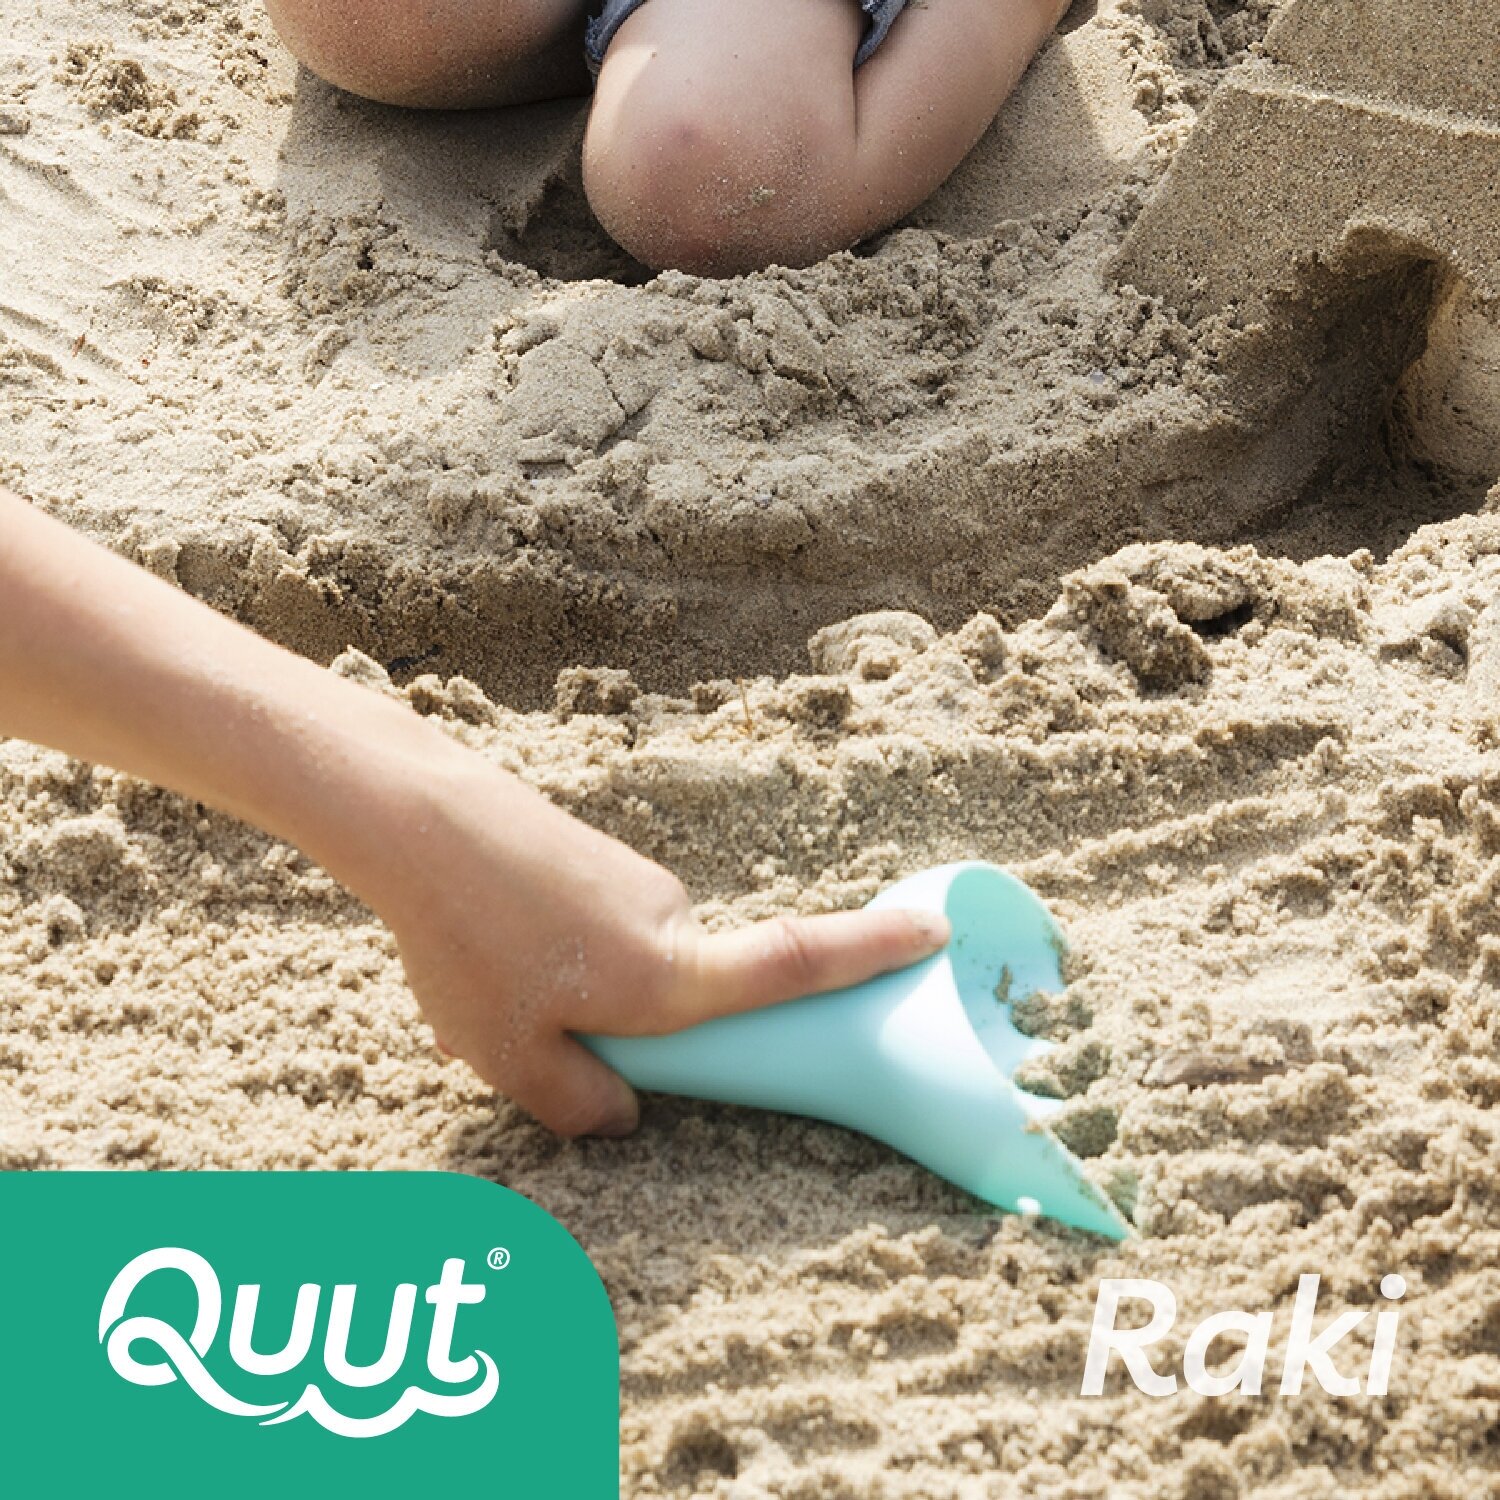 Детский игровой набор для песочницы Quut Raki c лопаткой. Цвет: садовый зелёный